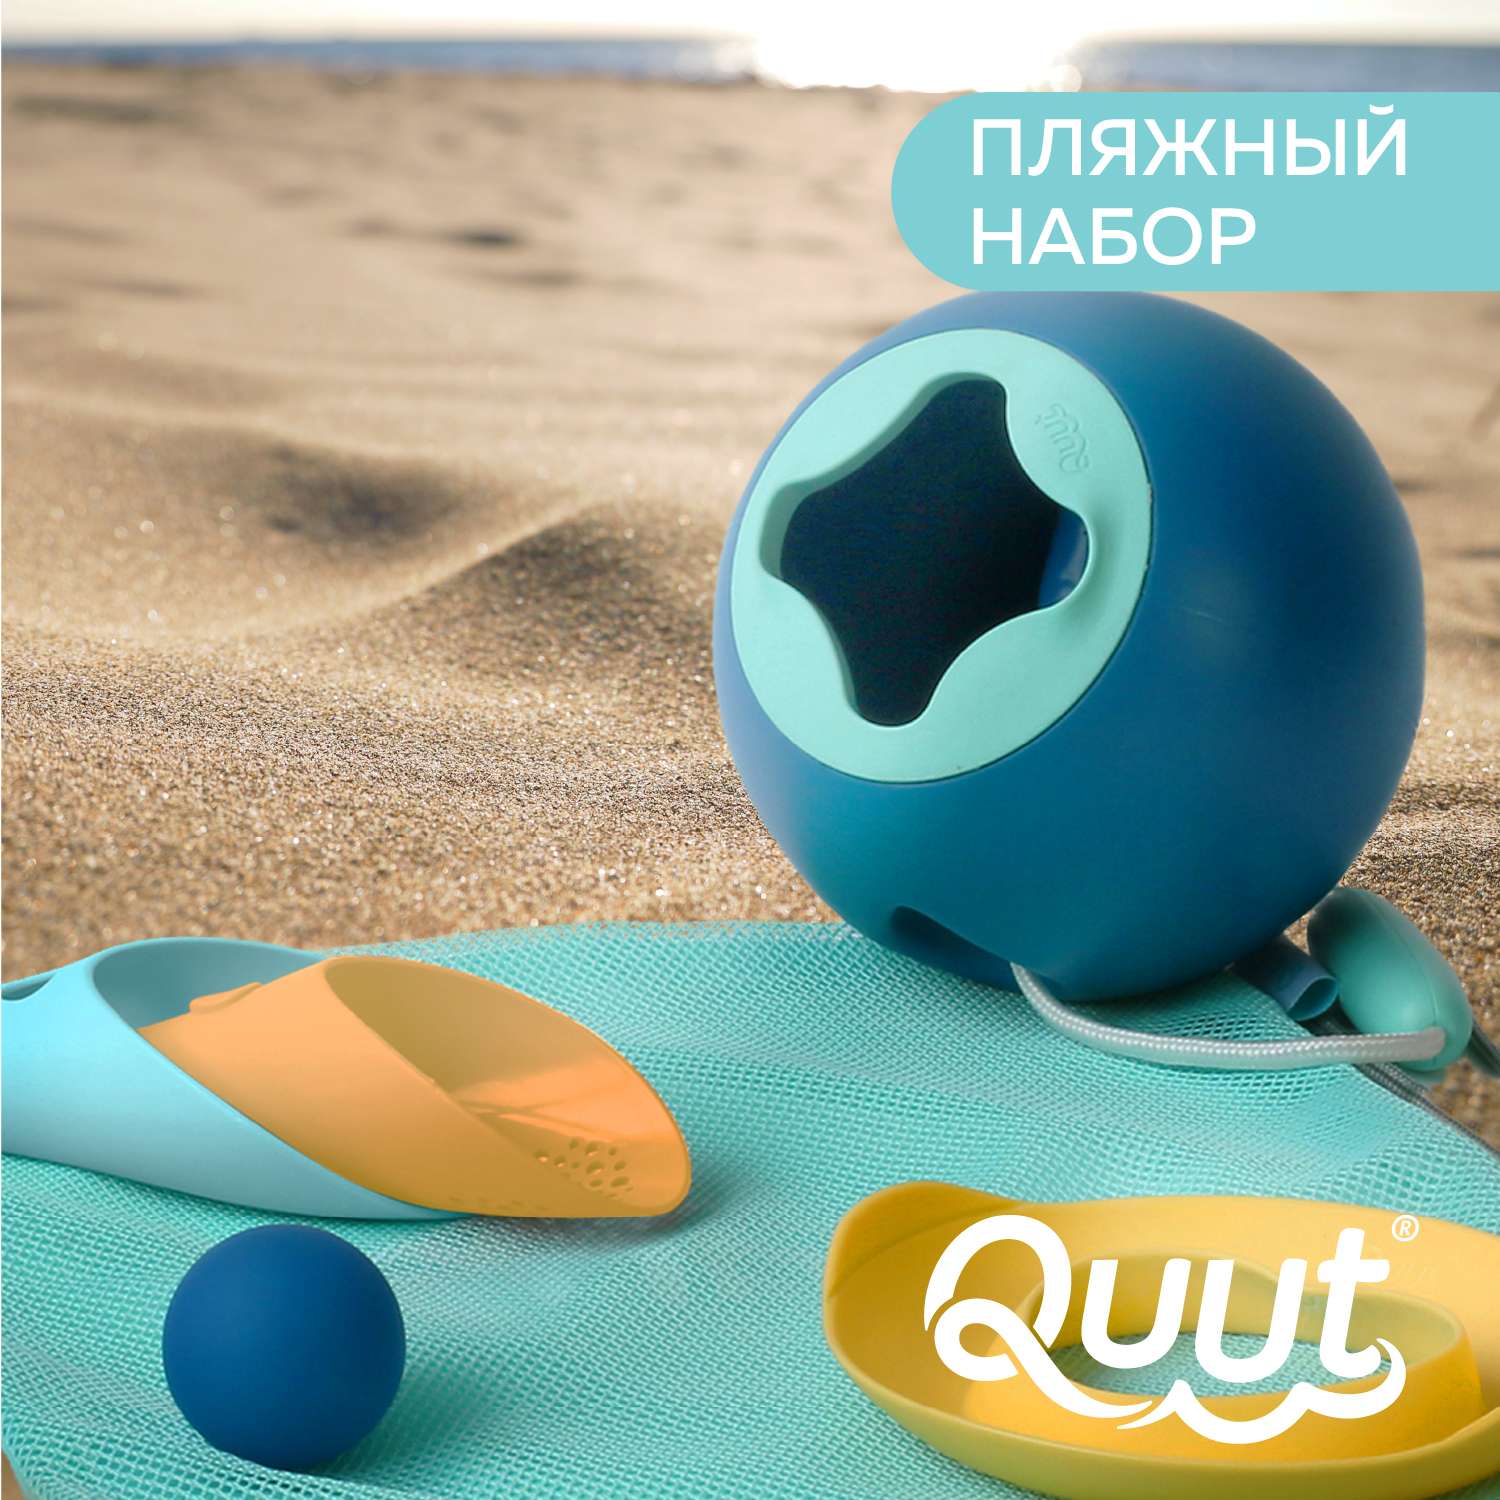 Пляжный набор QUUT Mini Ballo + Cuppi + сердечко SunnyLove в пляжном мешке - фото 2